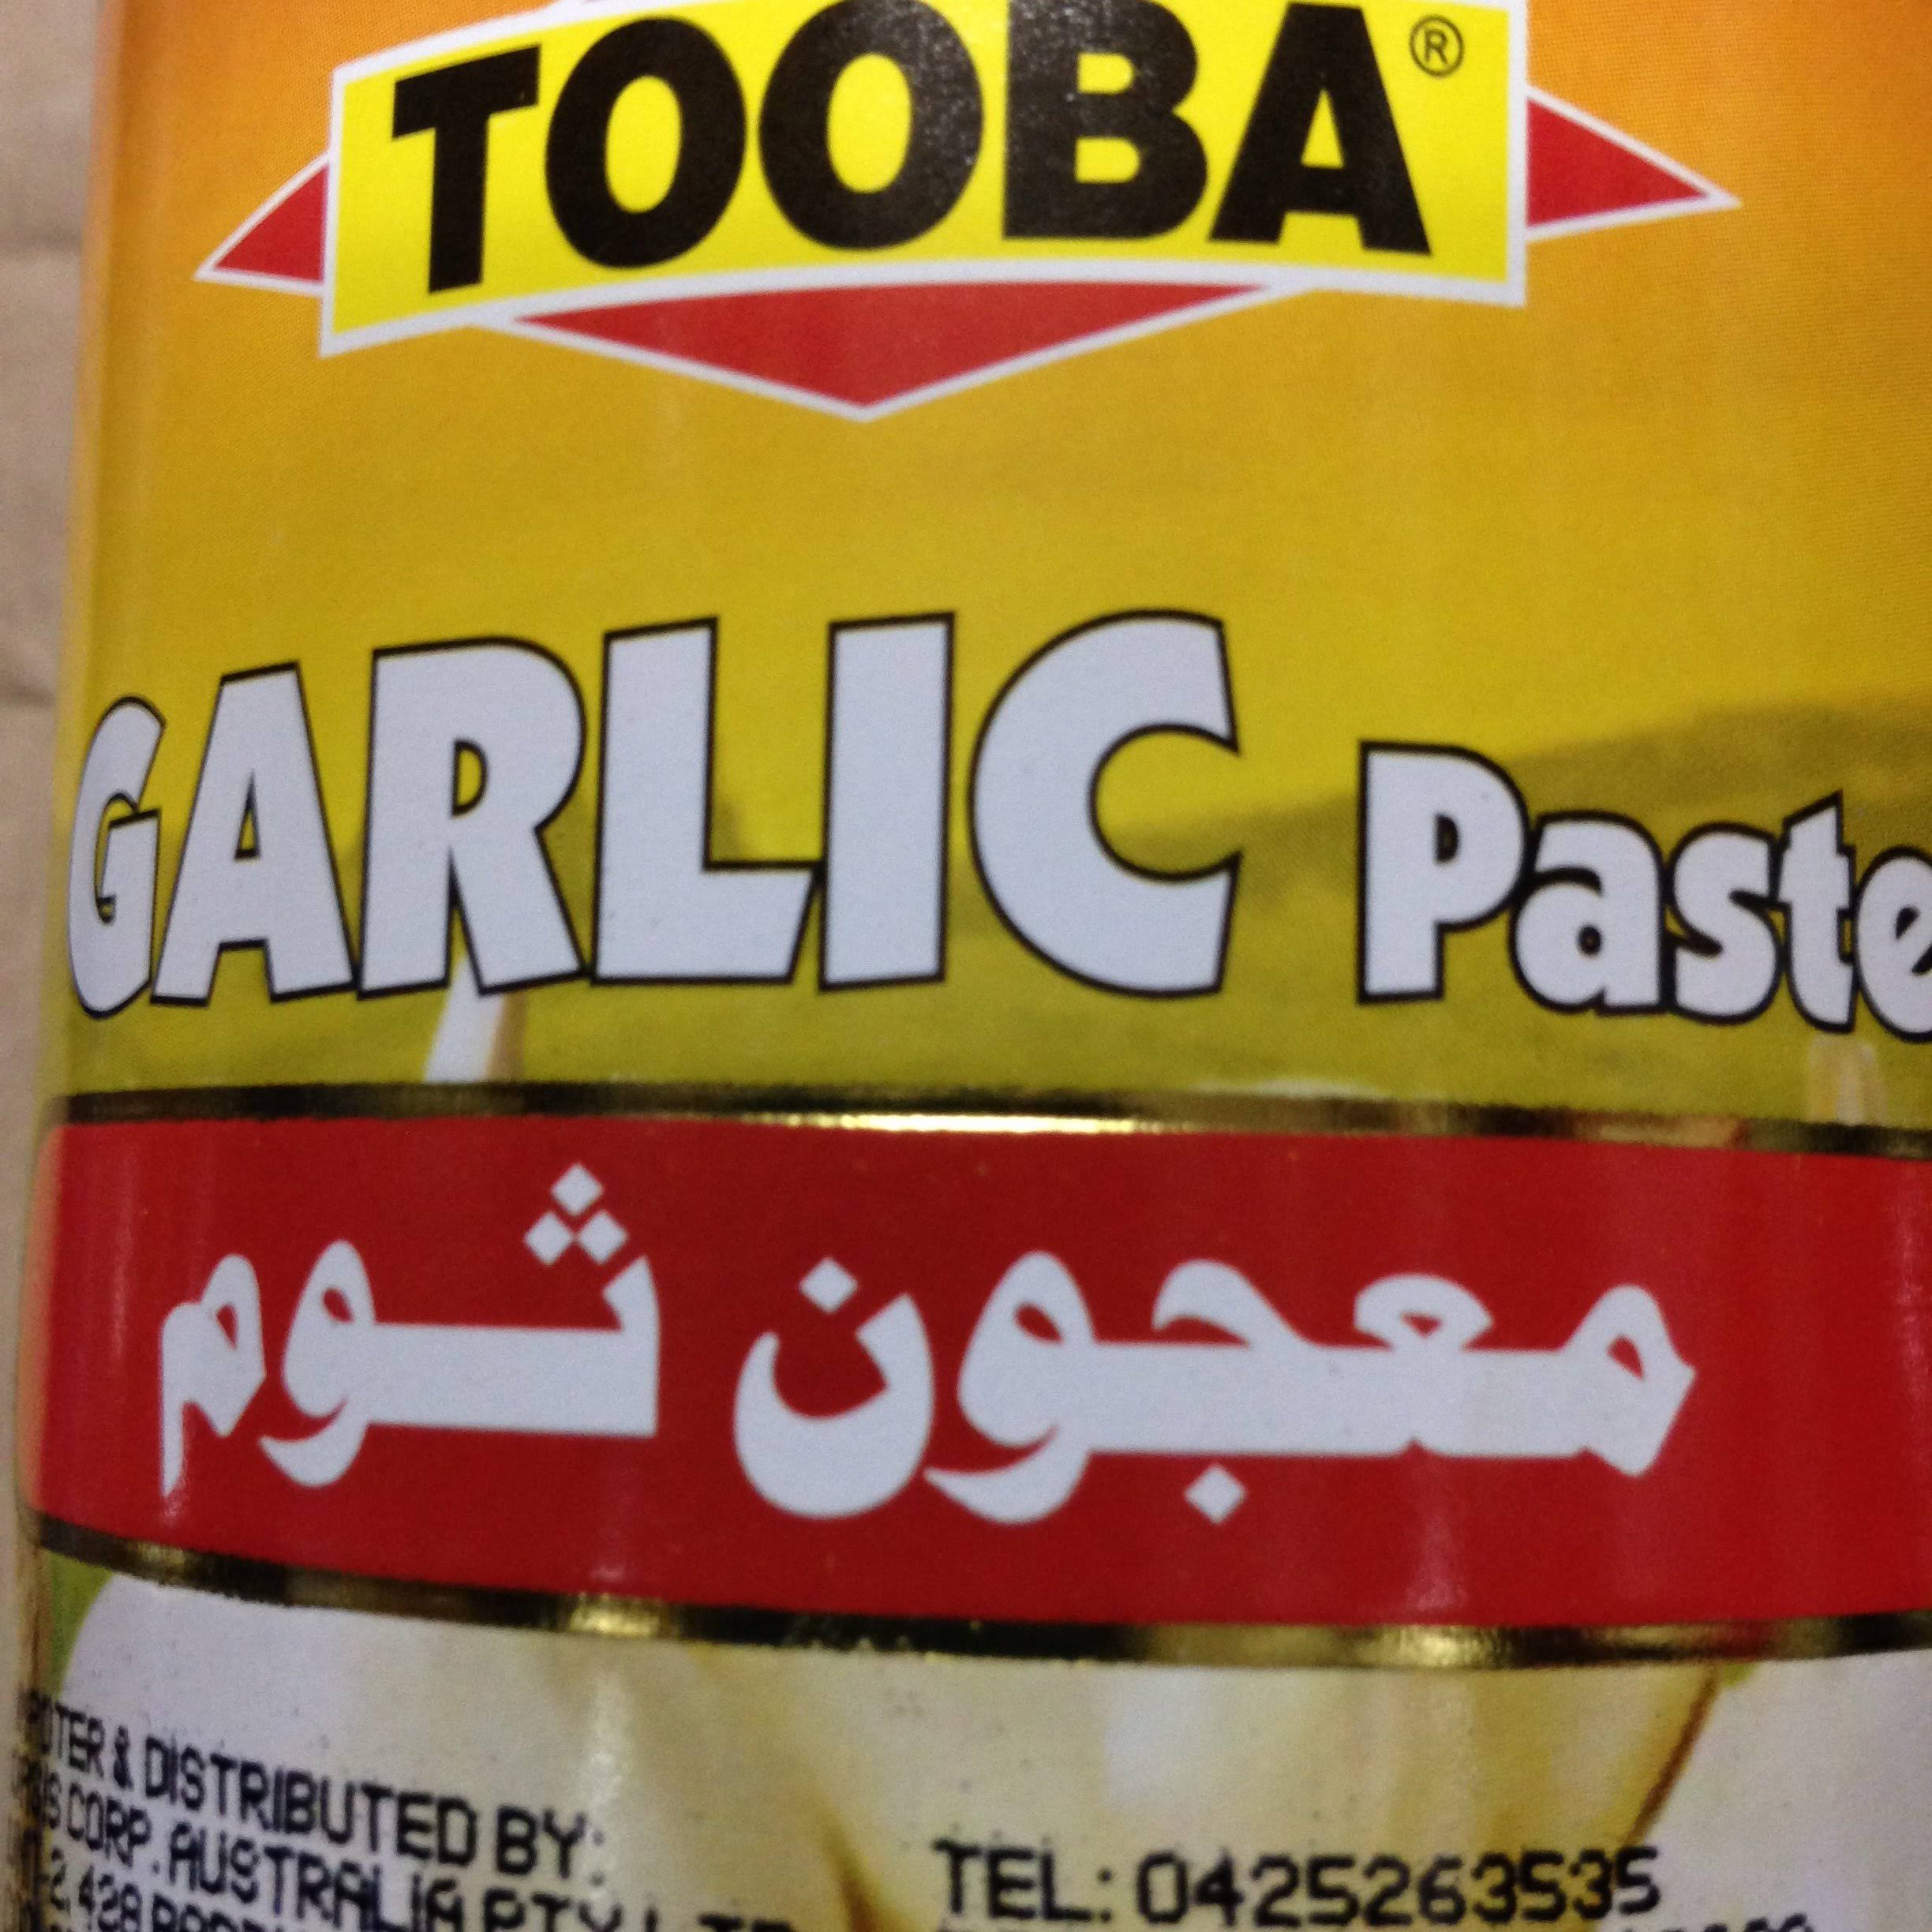 Tooba Garlic Paste 750gm